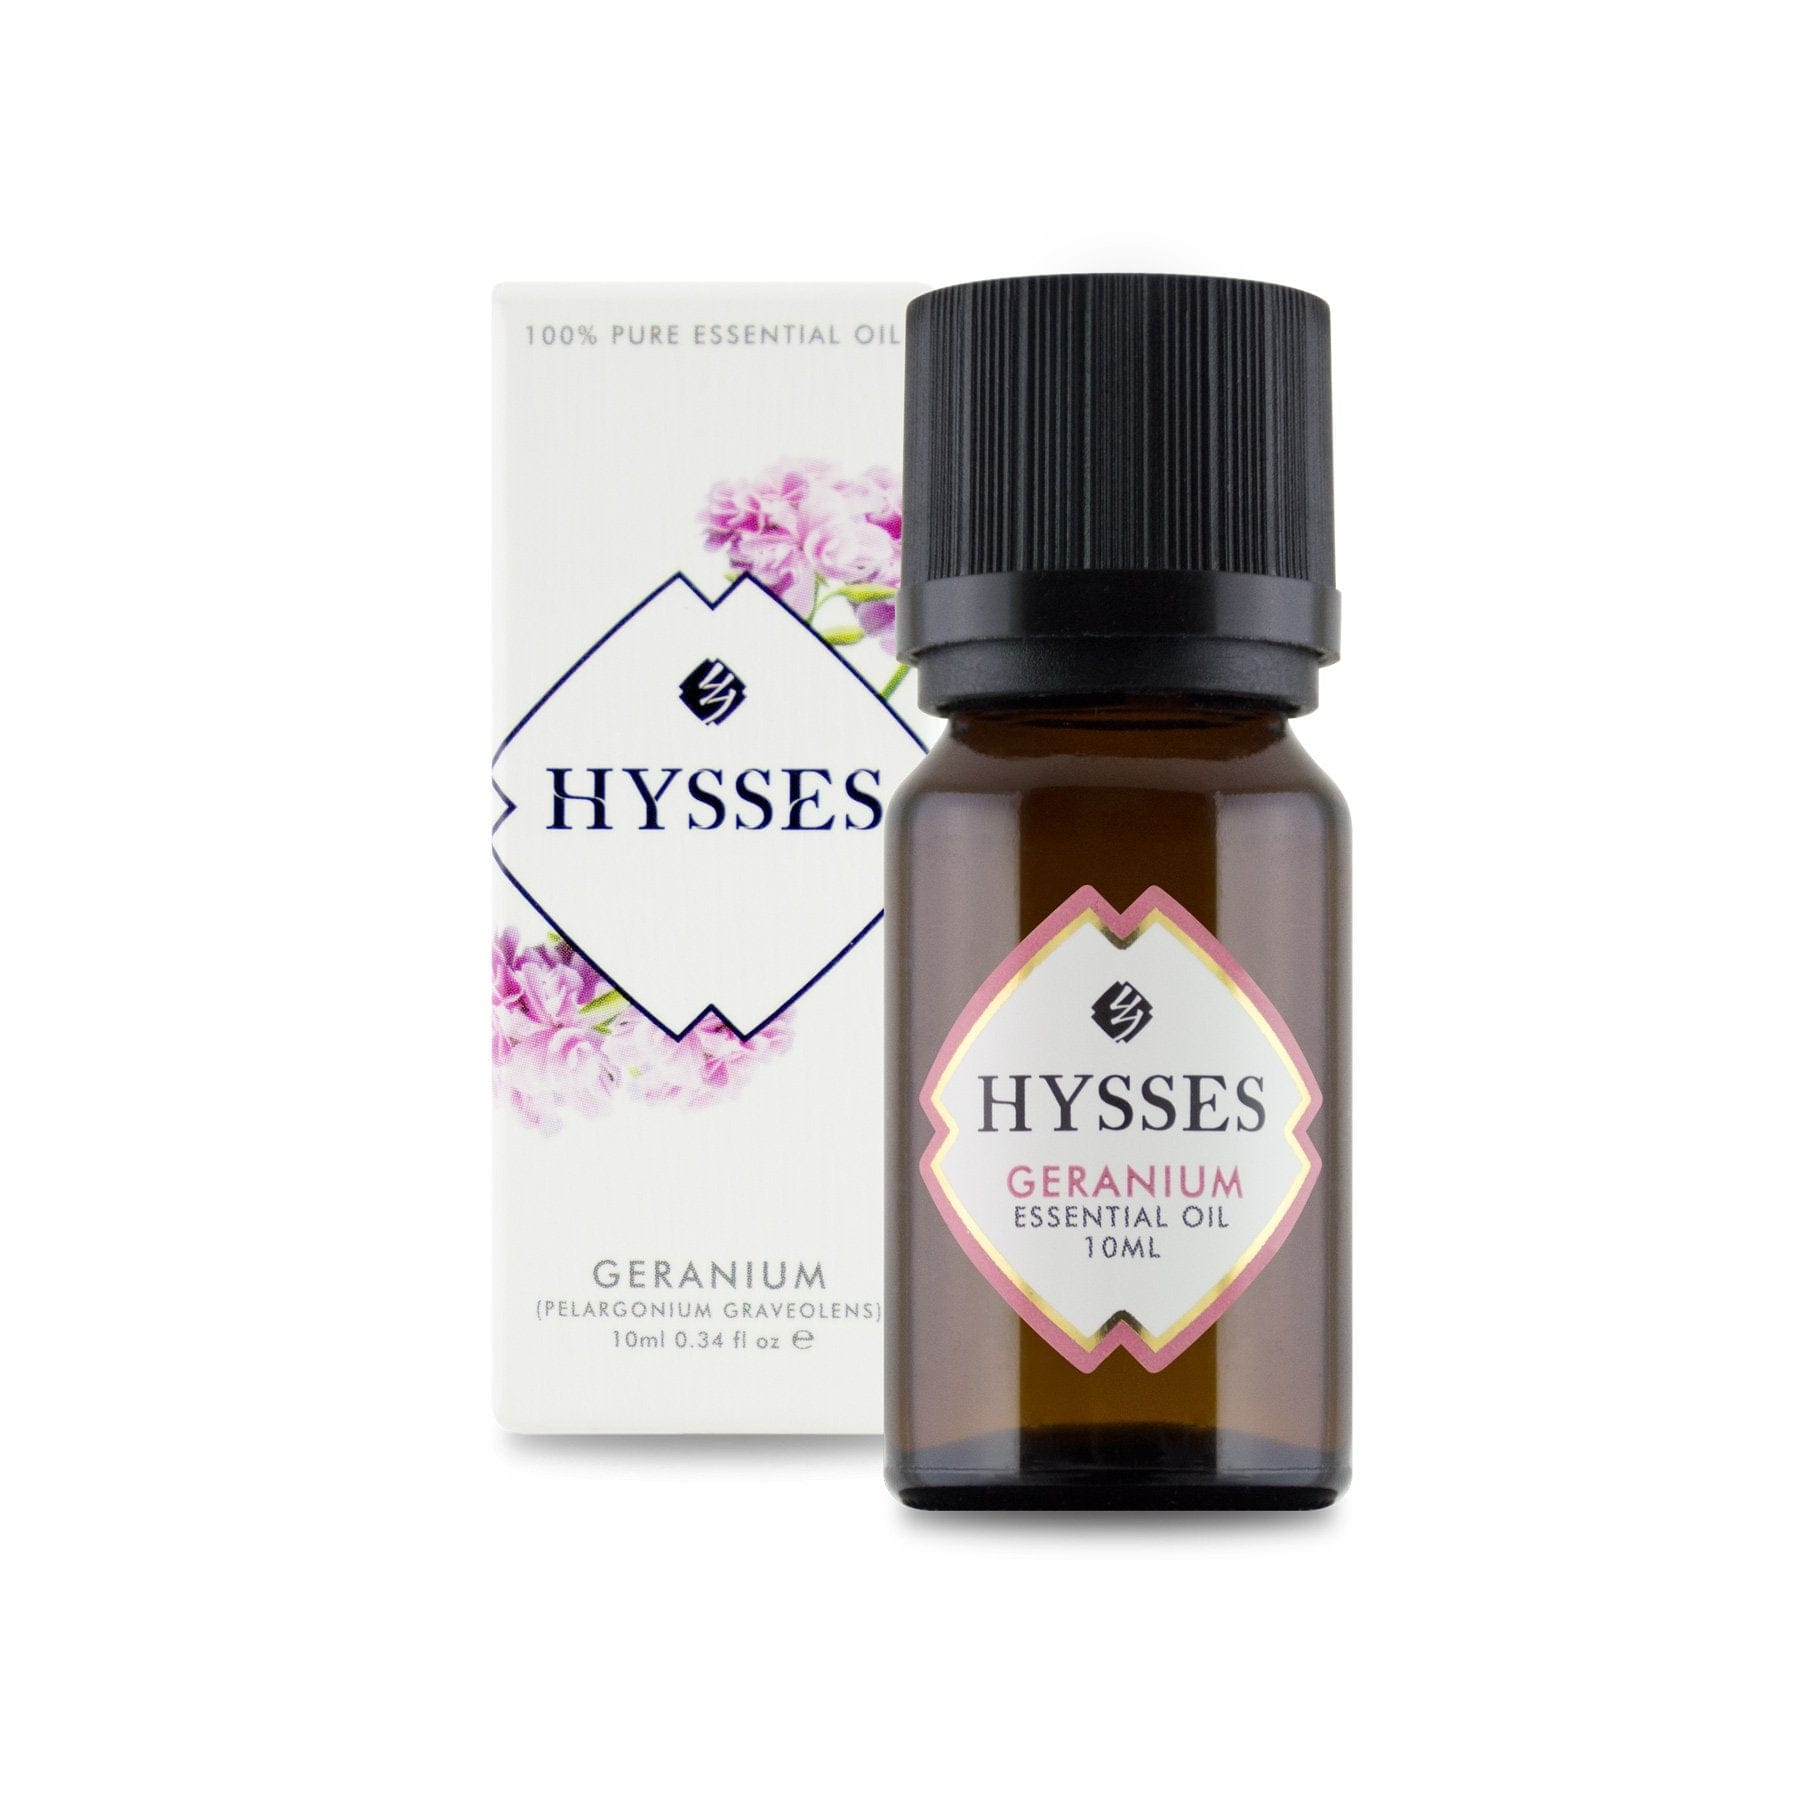 Hysses Essential Oil 100ml Essential Oil Geranium 100ml